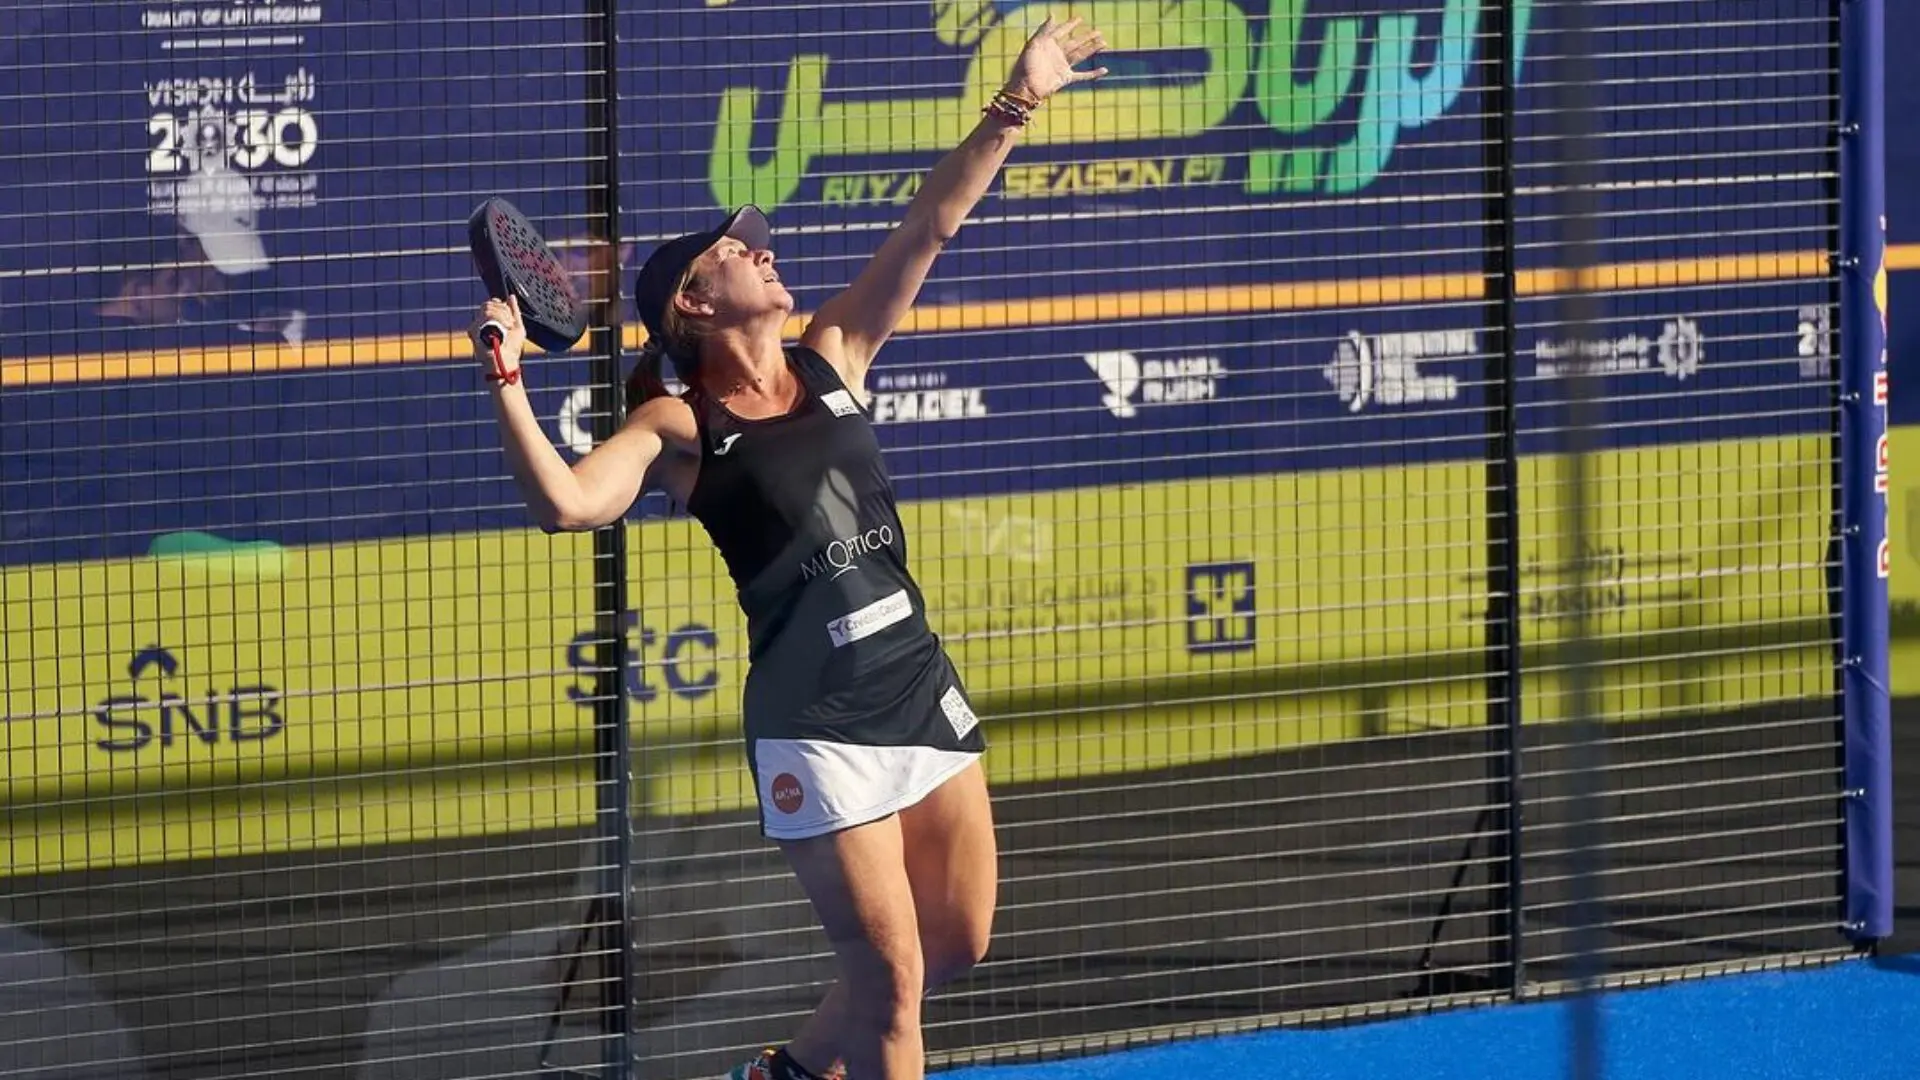 Carolina Navarro, quarts de finalista d'un gran torneig als 48 anys!